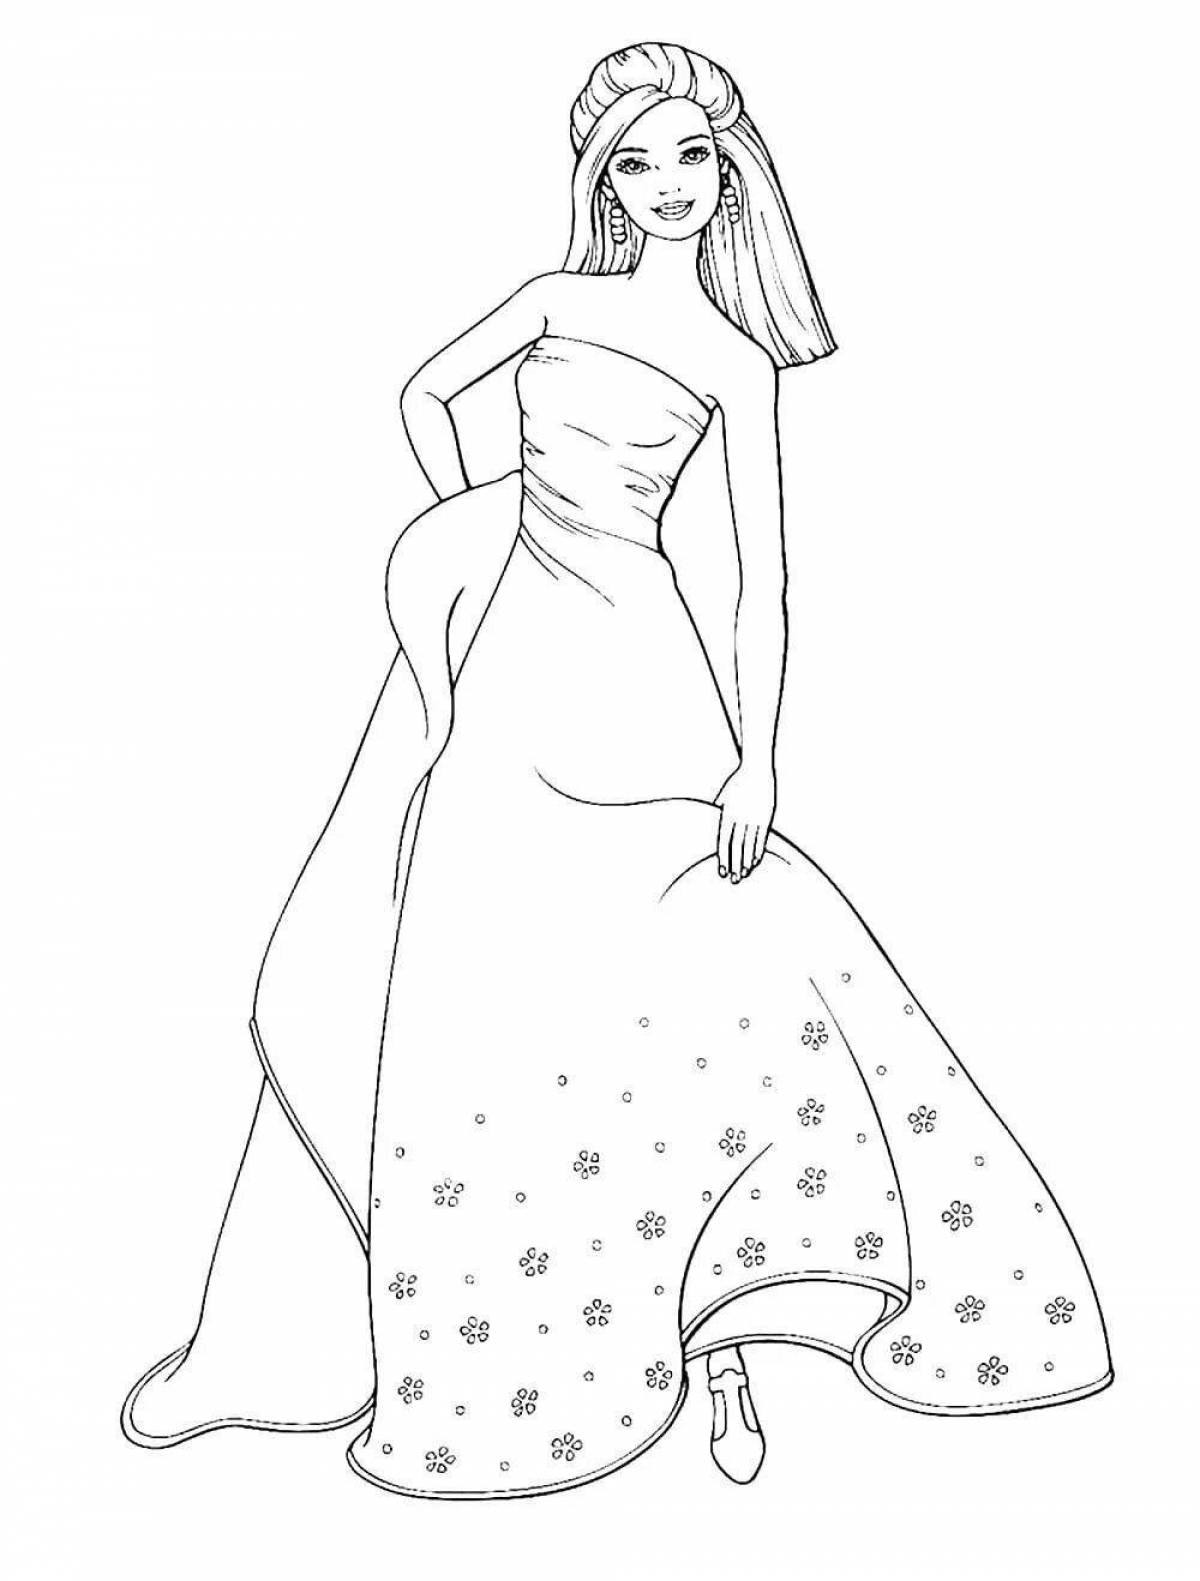 Раскраска девочка в платье